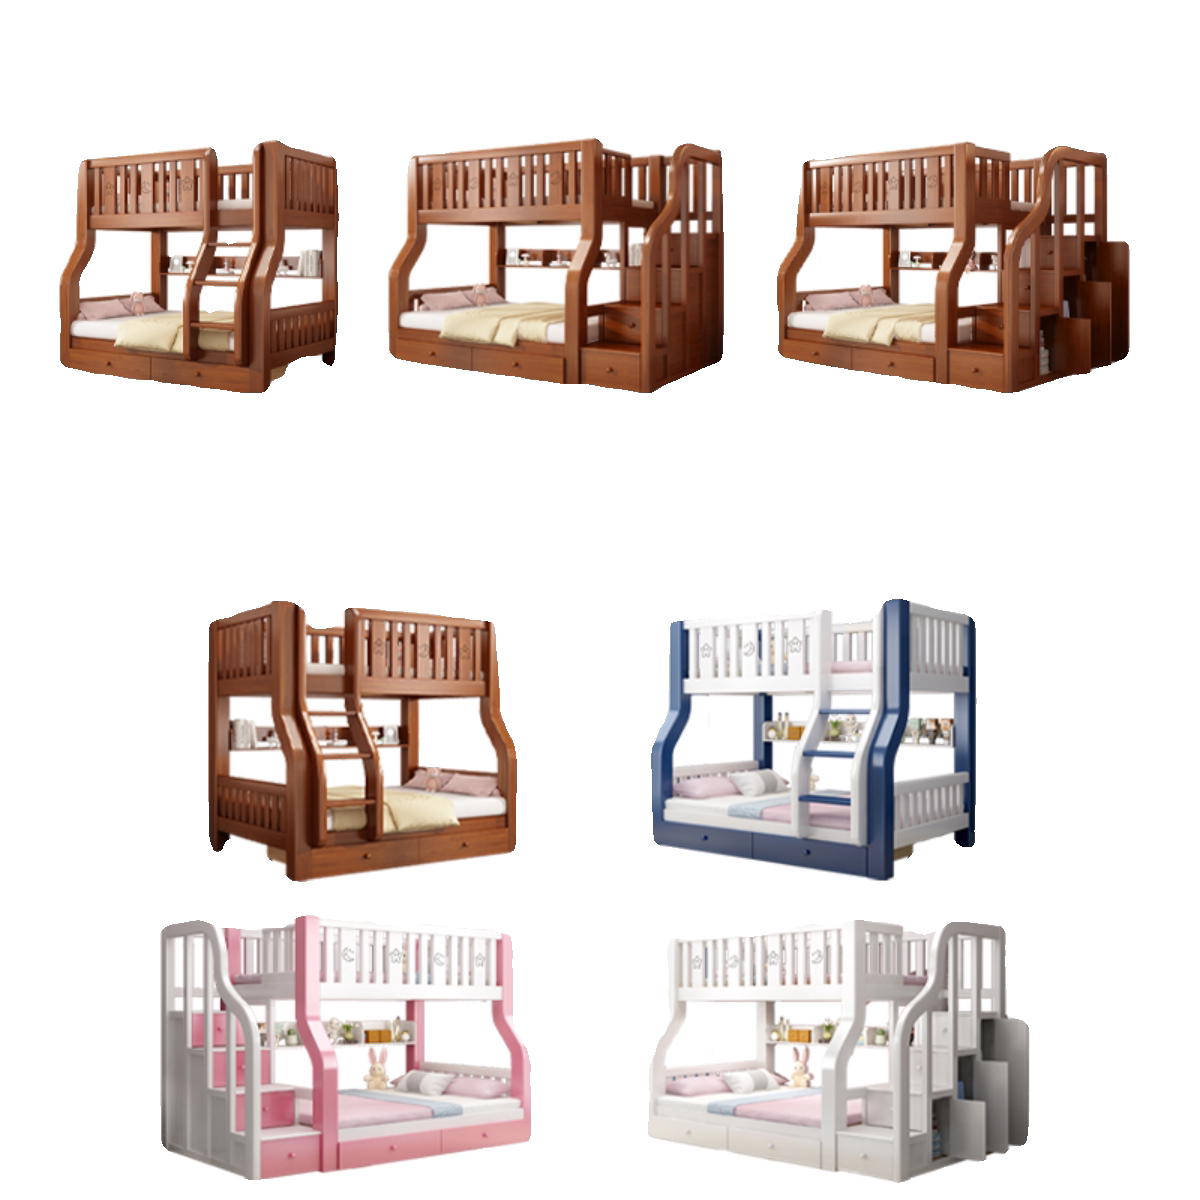 上下床双层床全实木双人高低子母床两层多功能组合儿童木床小户型